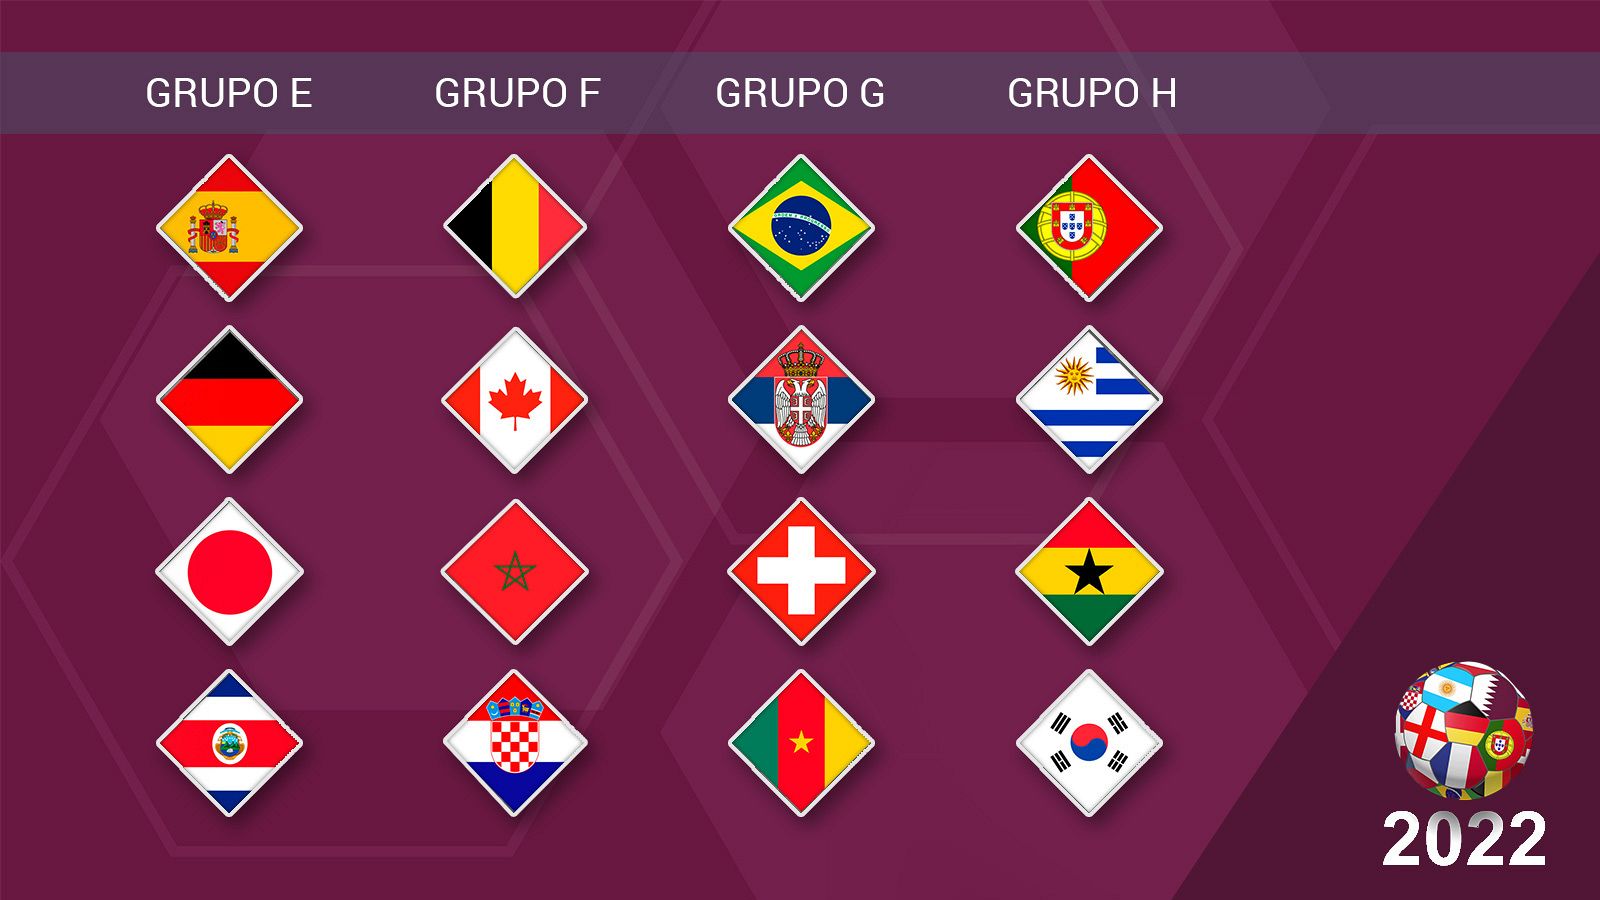 Mundial 2022 Qatar: ¿Por qué Uruguay lleva 4 estrellas en el